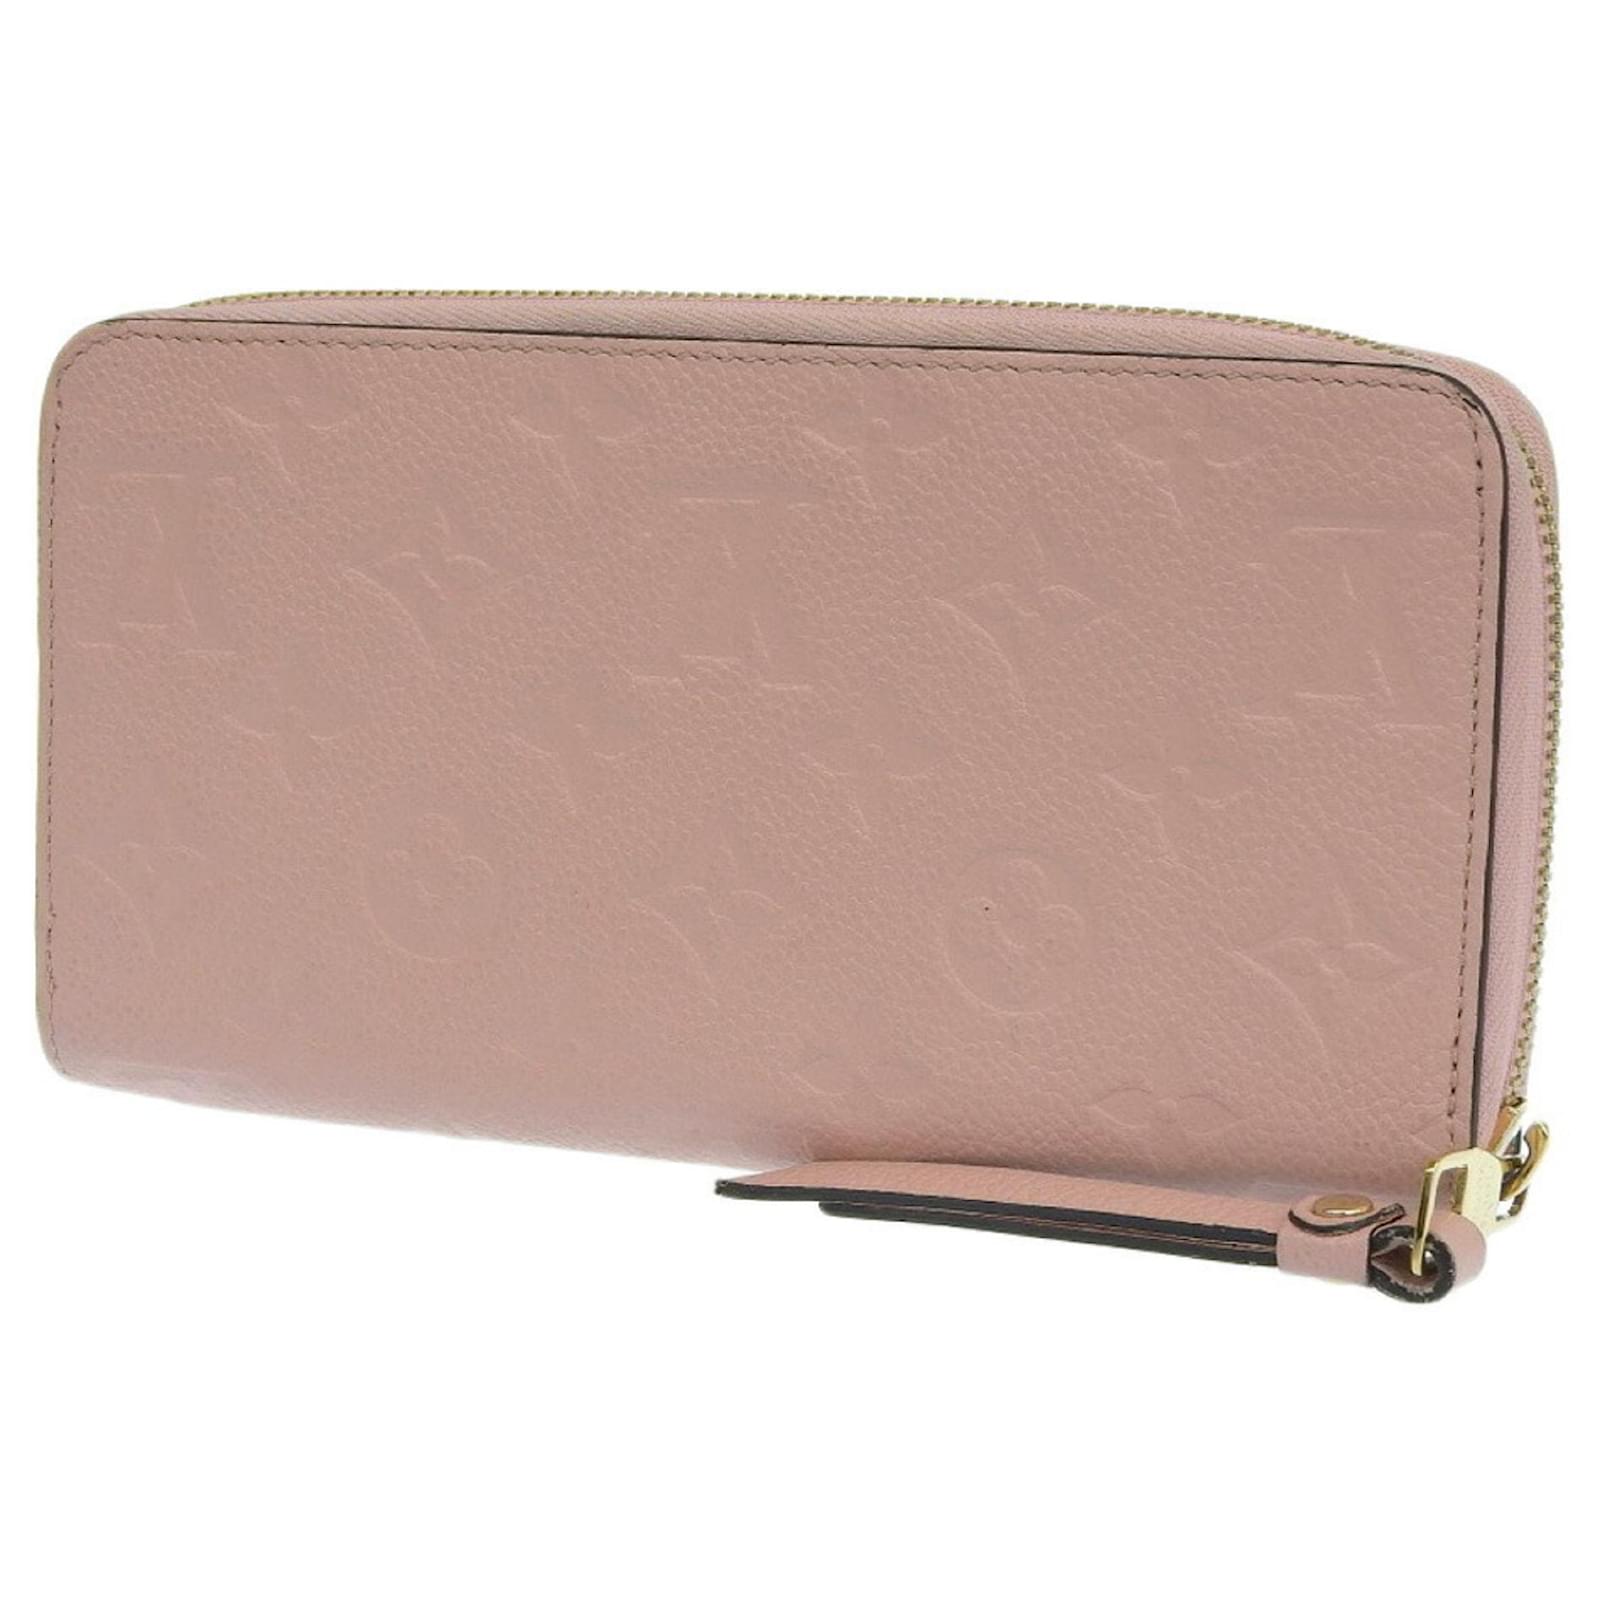 Louis Vuitton, Bags, Louis Vuitton Card Holder Box And Dust Bag